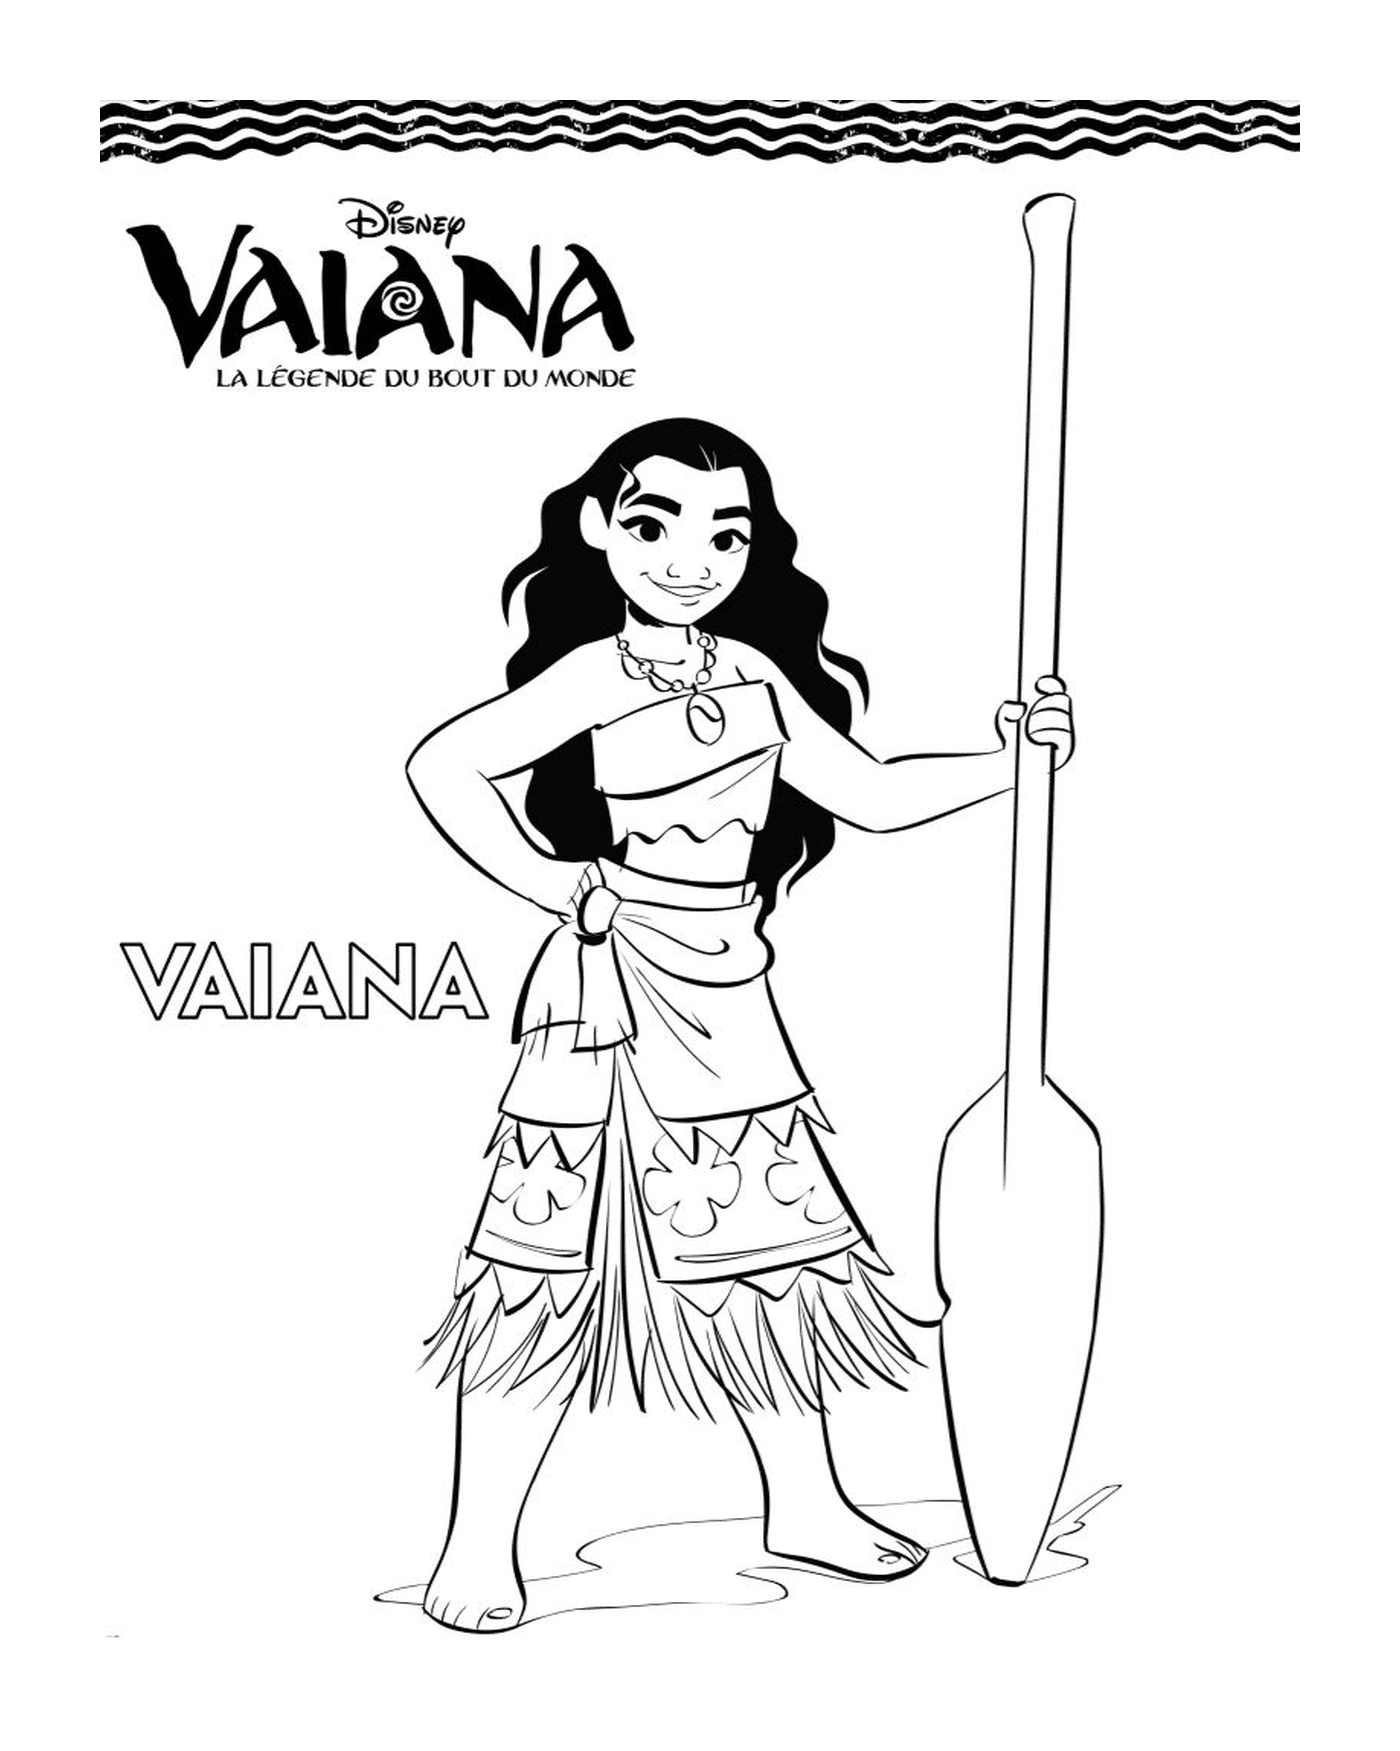  Vaiana brandishing a paddle 